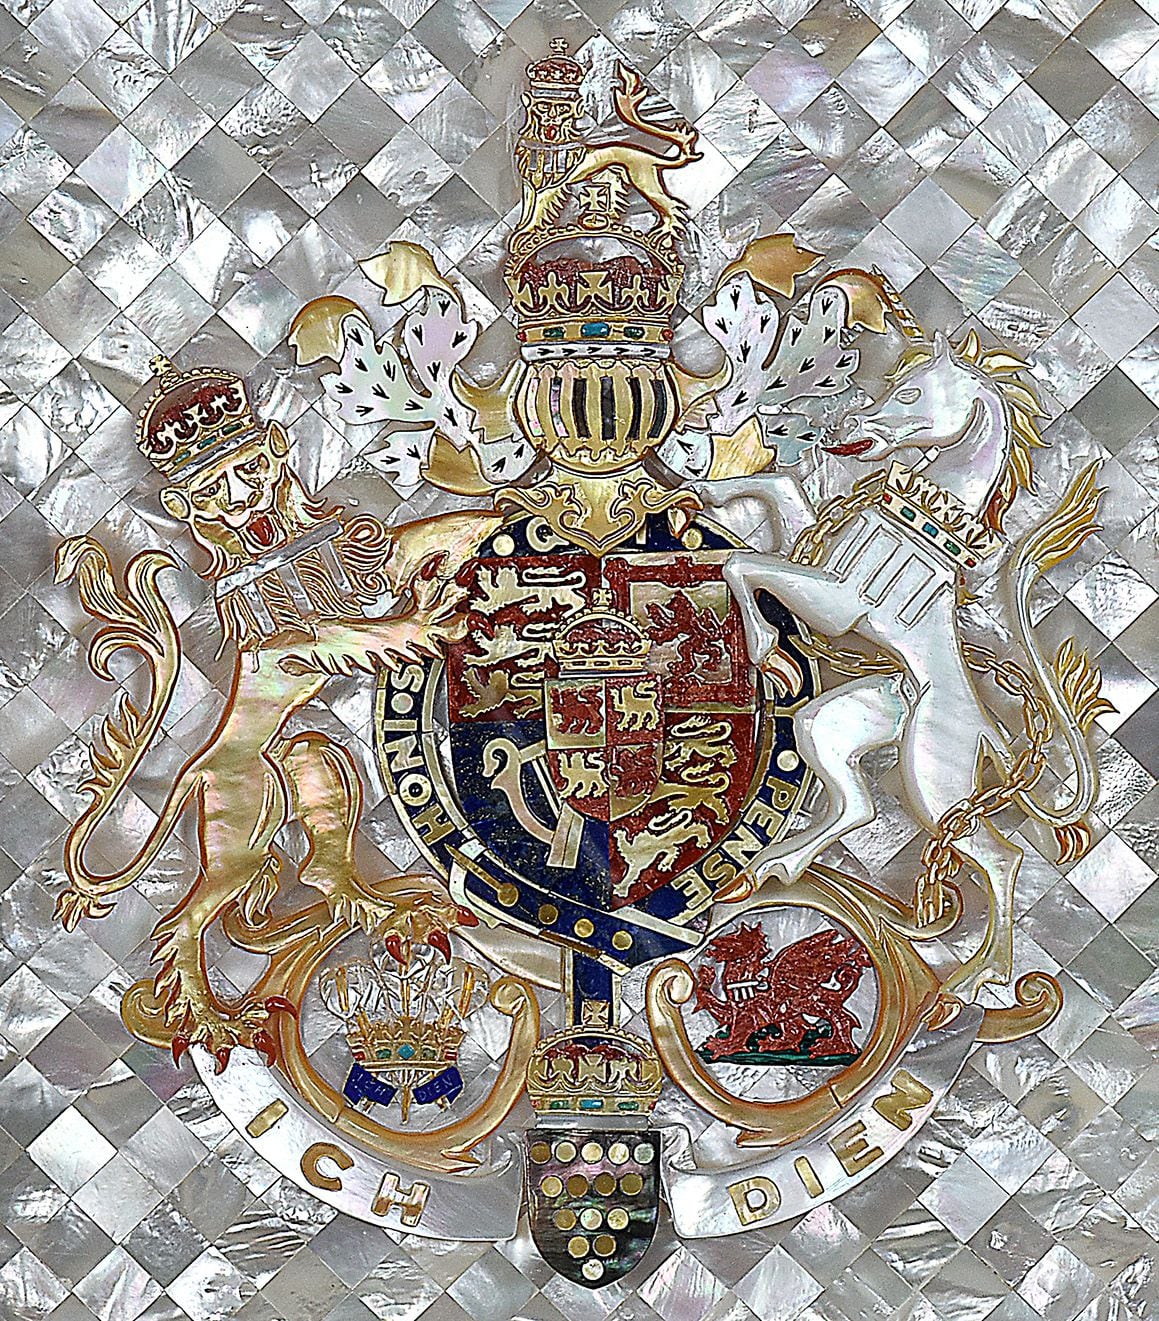 El Escudo de nácar del monarca británico (detalle). Foto Emilio Yidi, 2020.